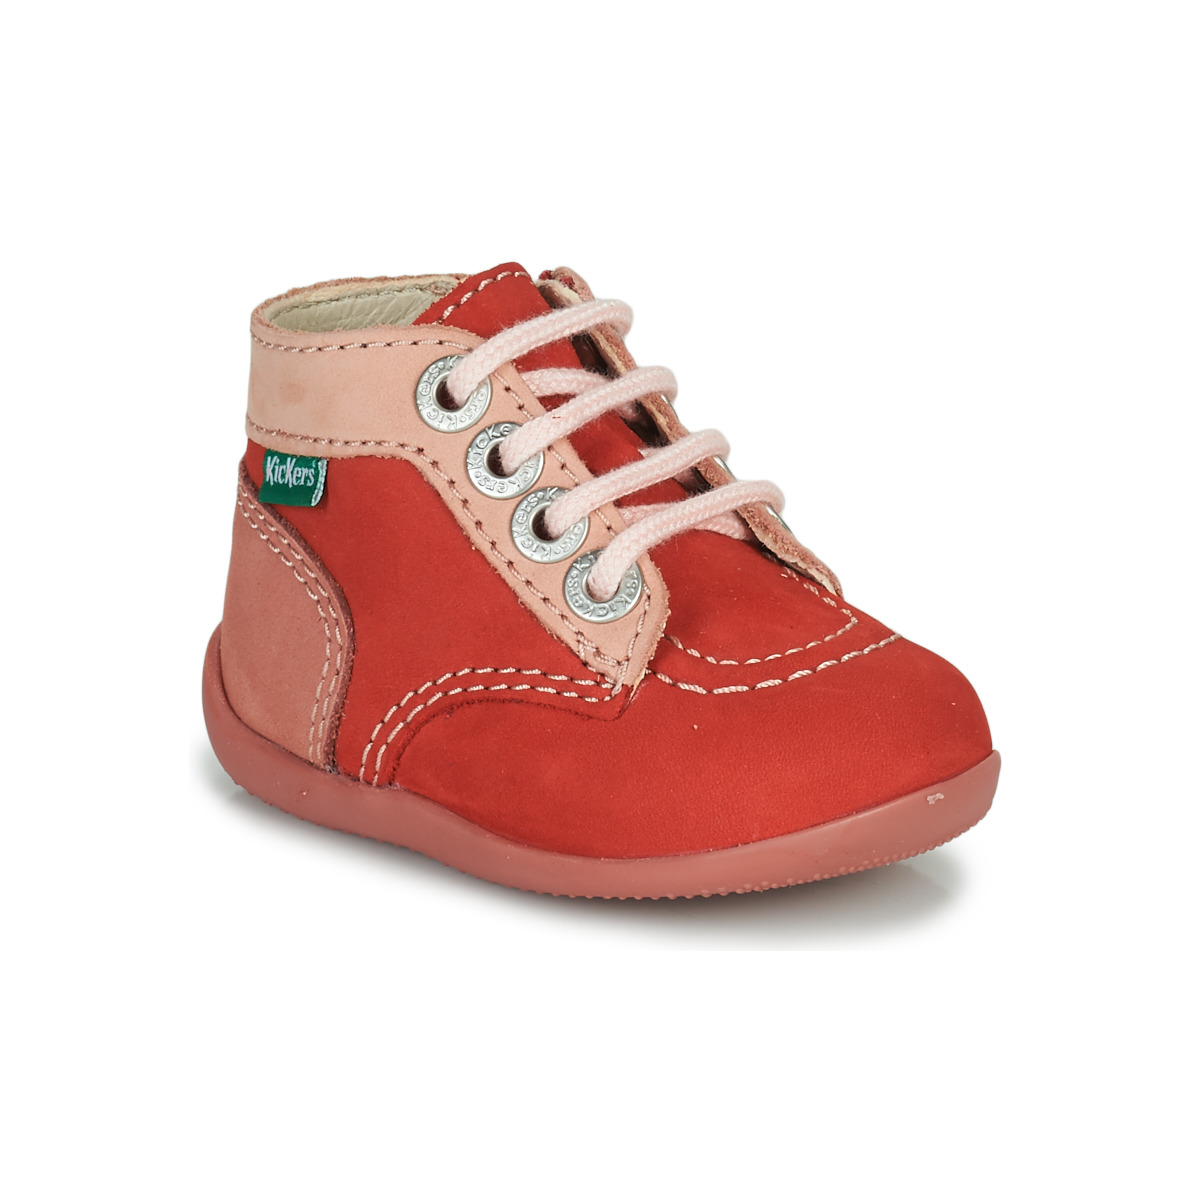 Παπούτσια Κορίτσι Μπότες Kickers BONZIP-2 Ροζ